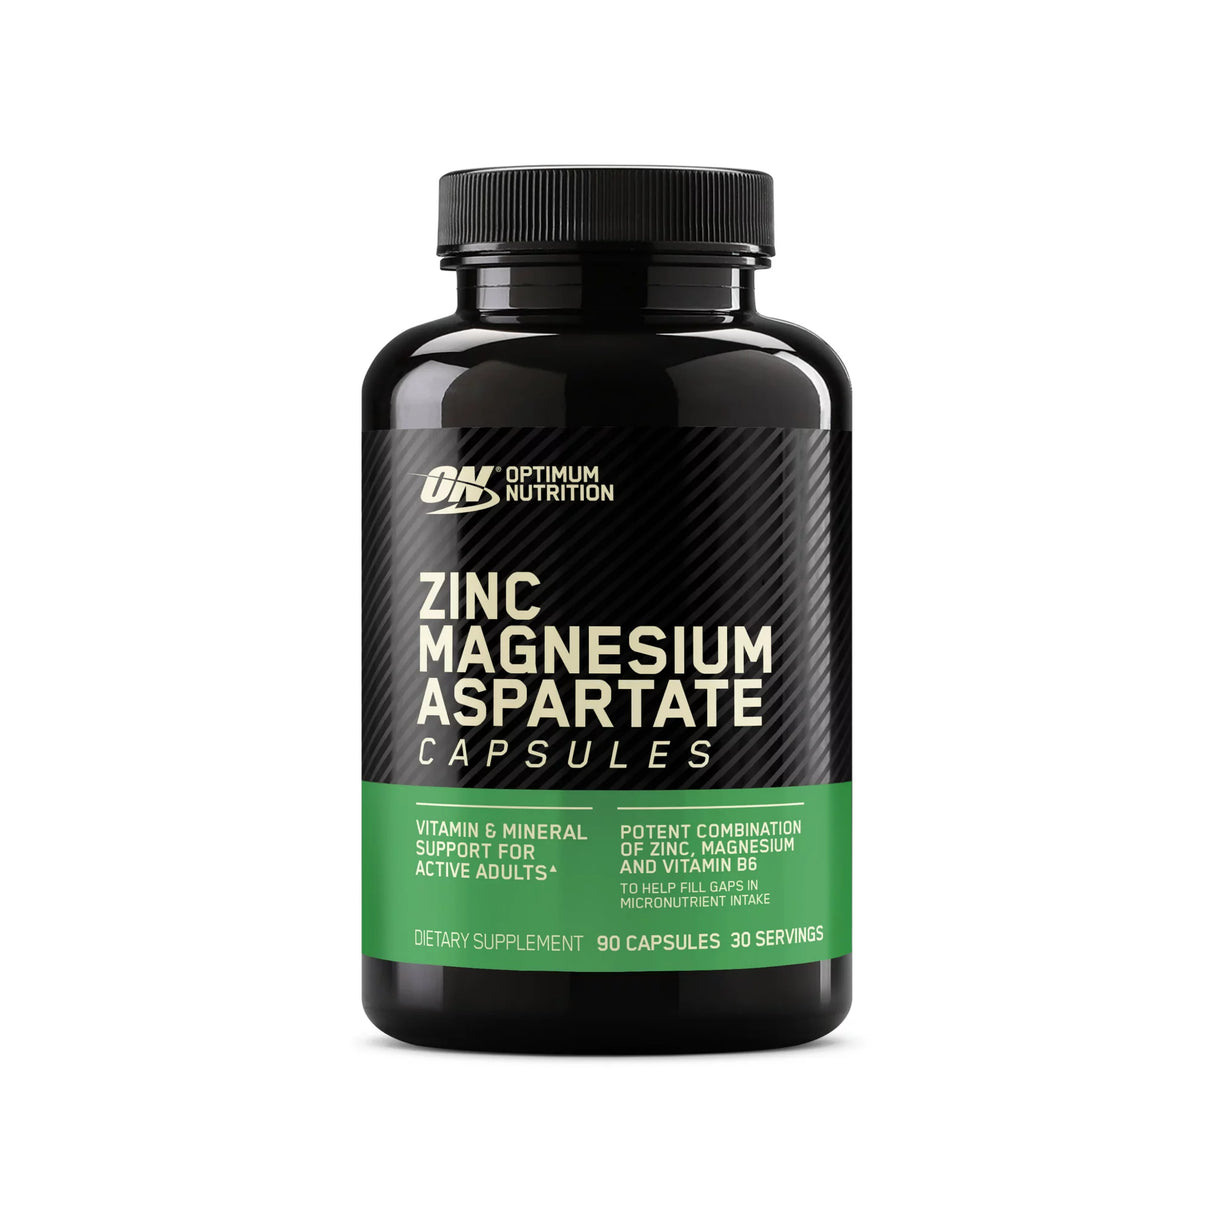 Zinc Magnesium Aspartate - Optimum Nutrition